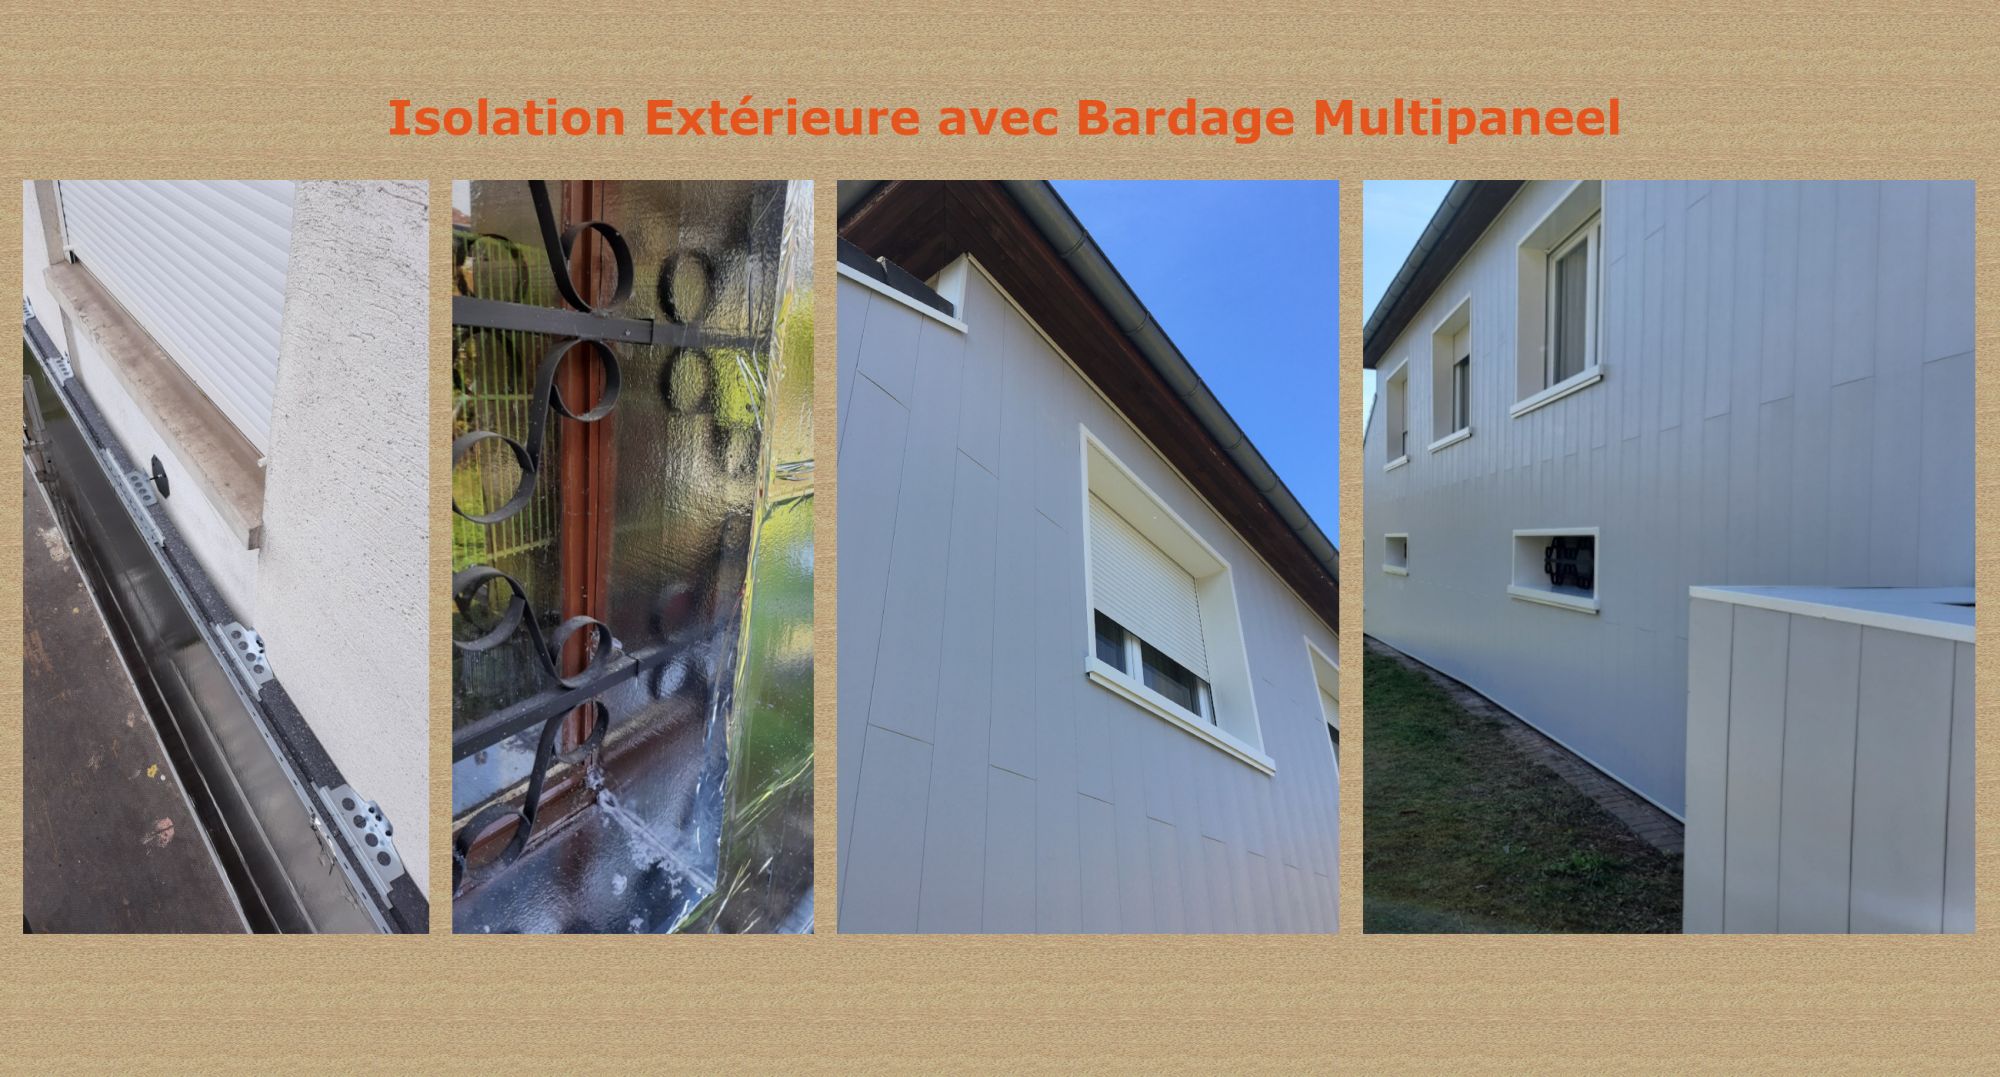 Isolation Extérieure avec Bardage Multipaneel à Evette Salbert près de Belfort Montbéliard